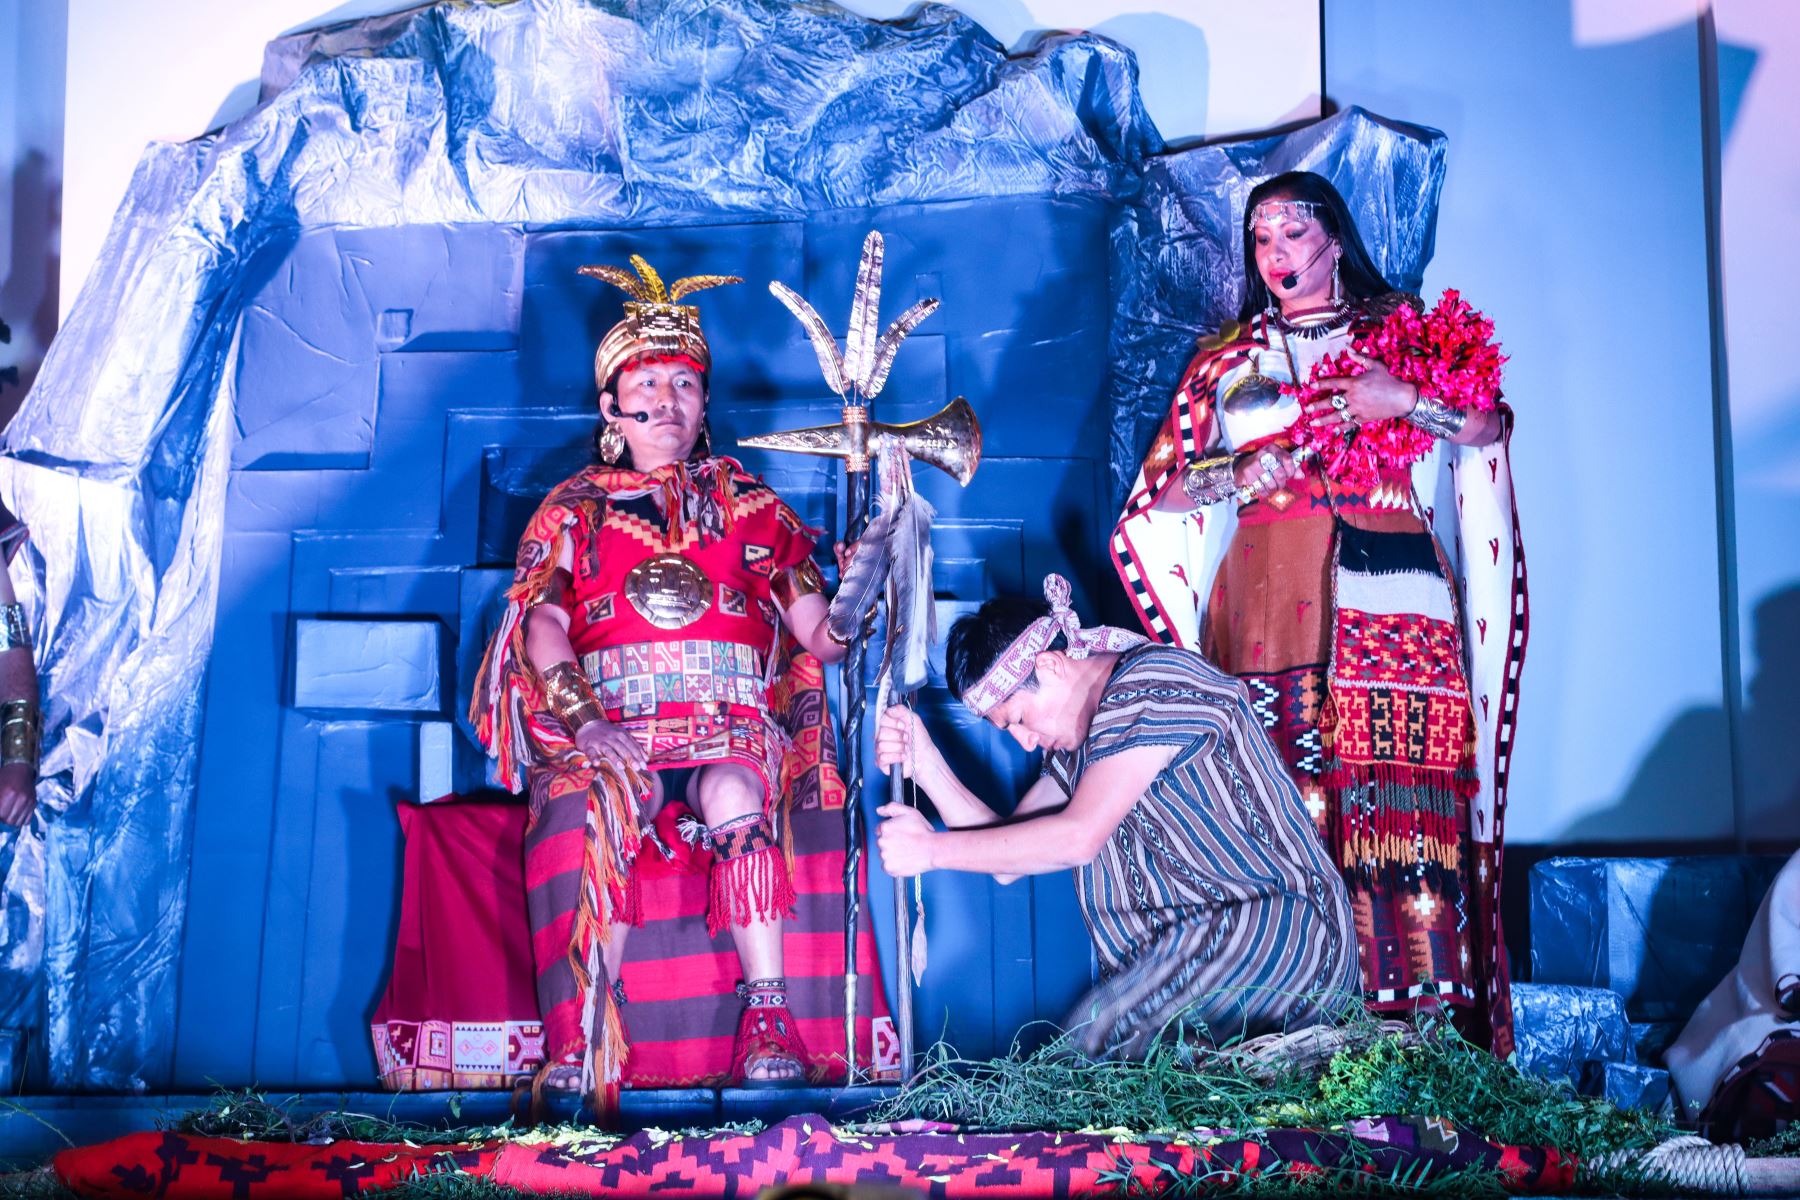 La escenificación del Inti Raymi se hará en sus tres escenarios habituales en la ciudad del Cusco el 24 de junio. Foto: ANDINA/Percy Hurtado Santillán